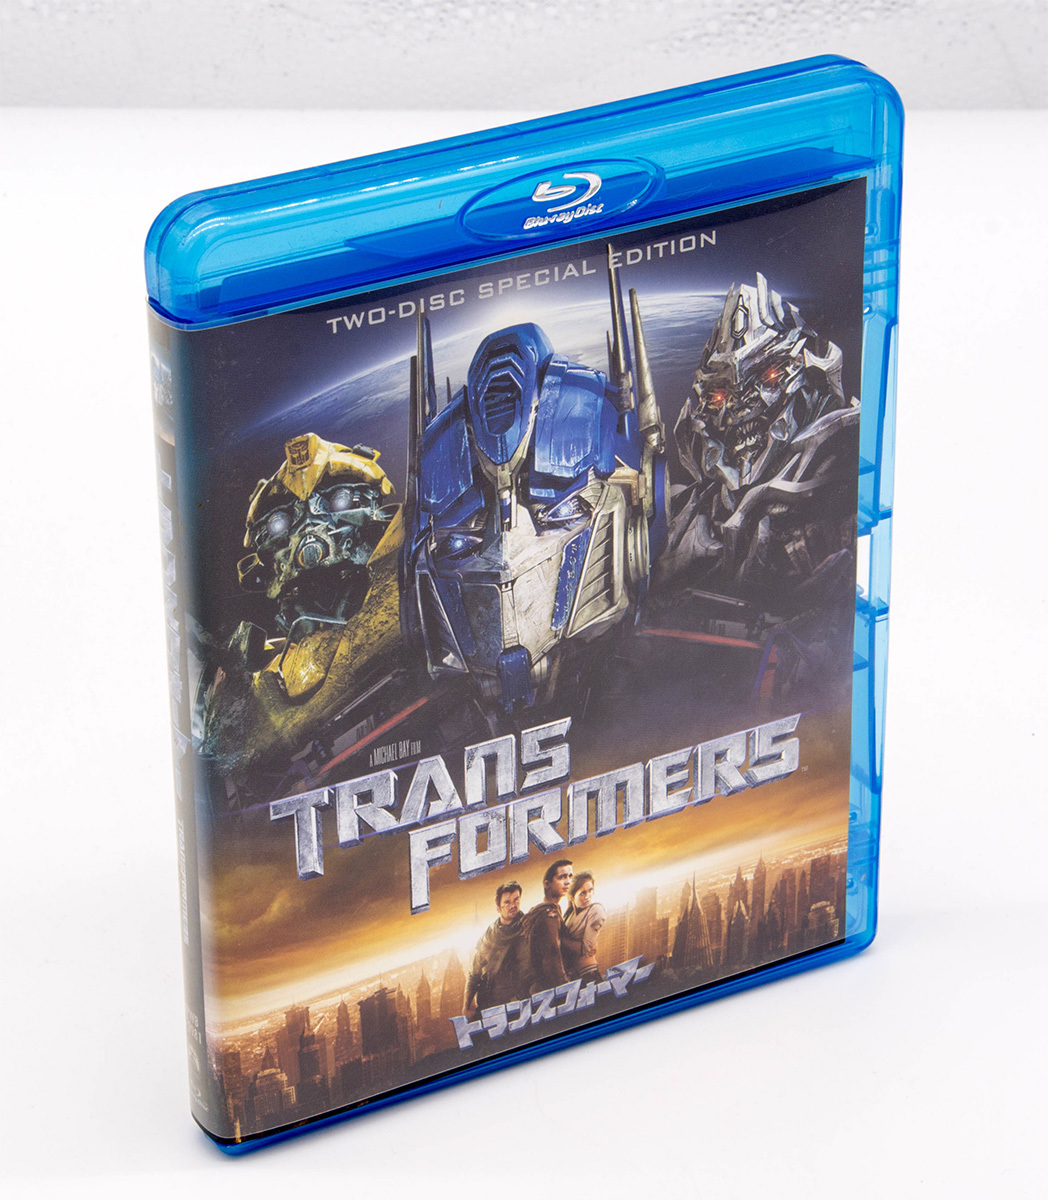 トランスフォーマー TWO-DISC SPECIAL EDITION Transformers Blu-ray 2枚組 シャイア・ラブーフ 中古 セル版_画像1